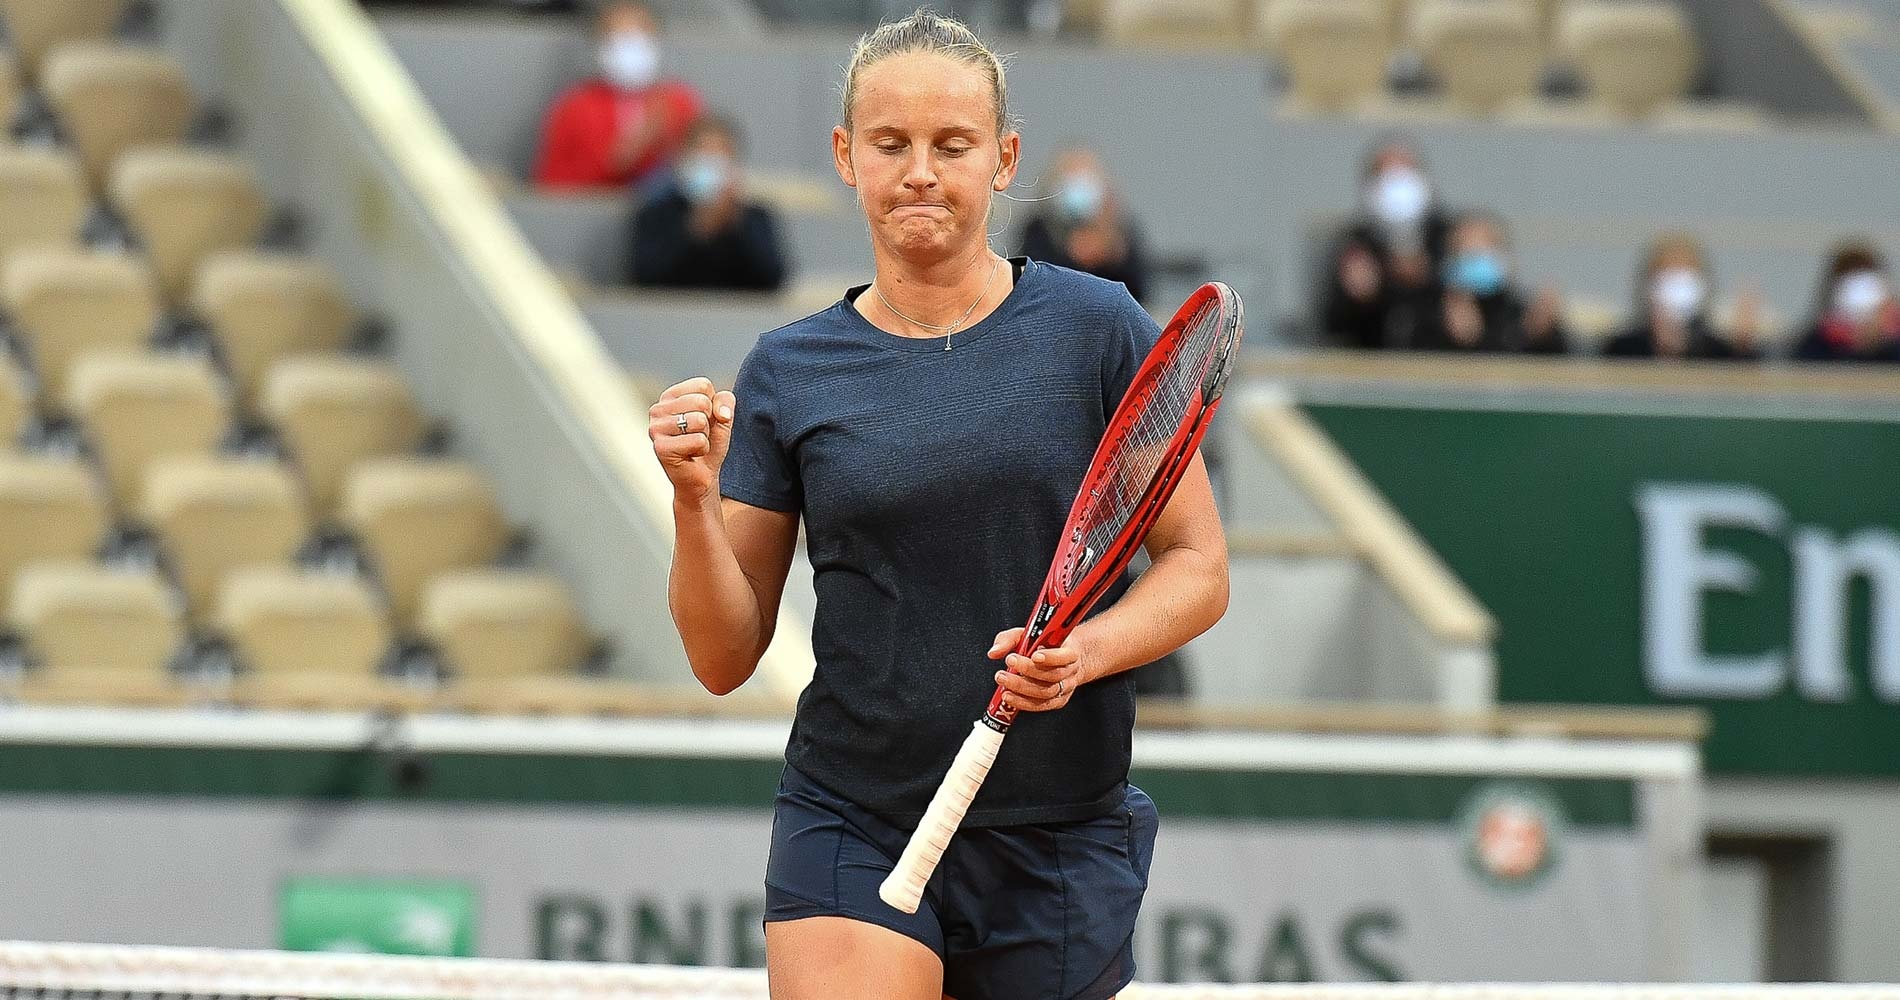 Fiona Ferro at Roland-Garros 2020 round 3